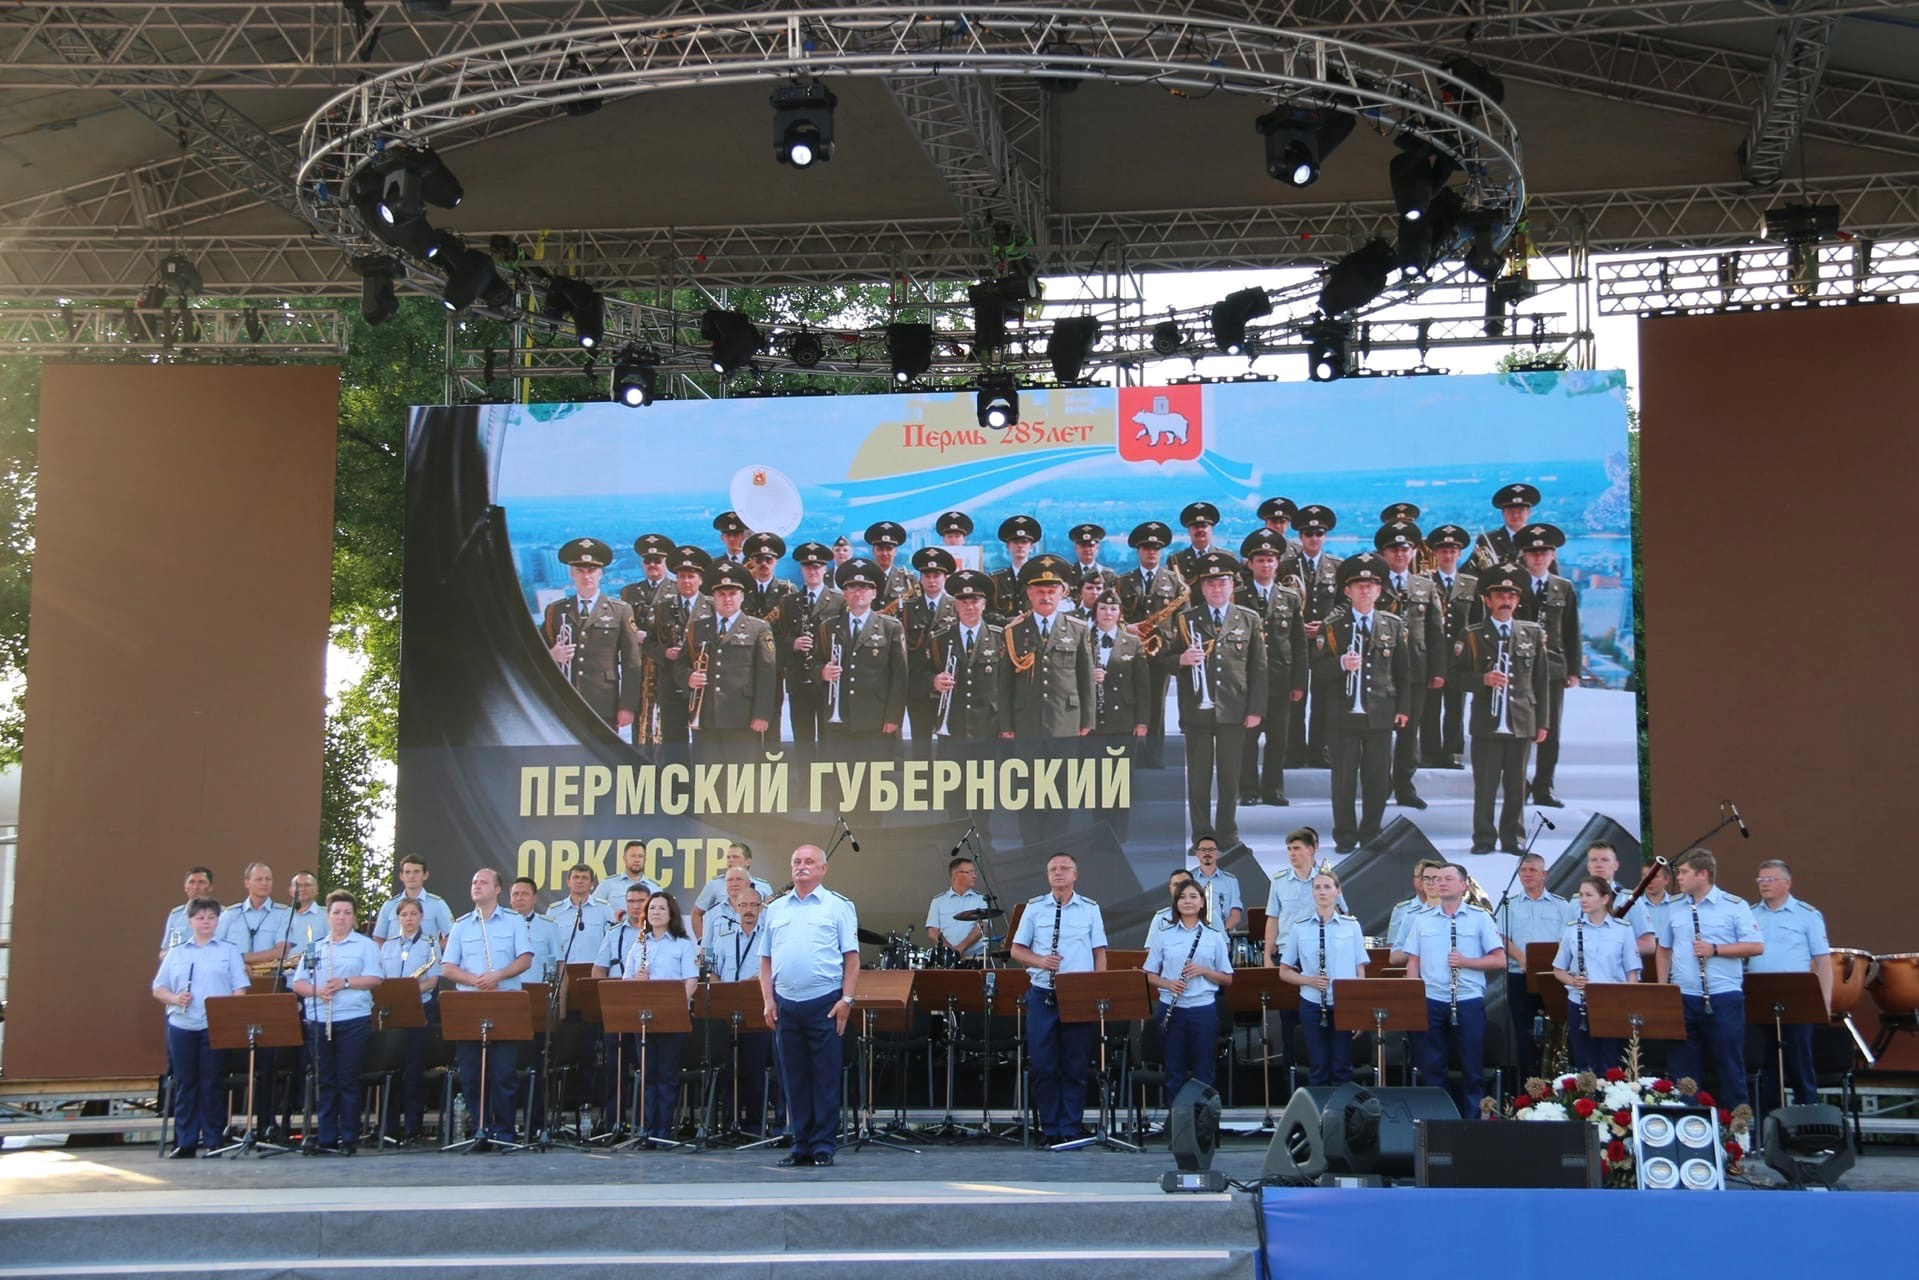 Оркестр исполнит музыку военных лет и победные марши